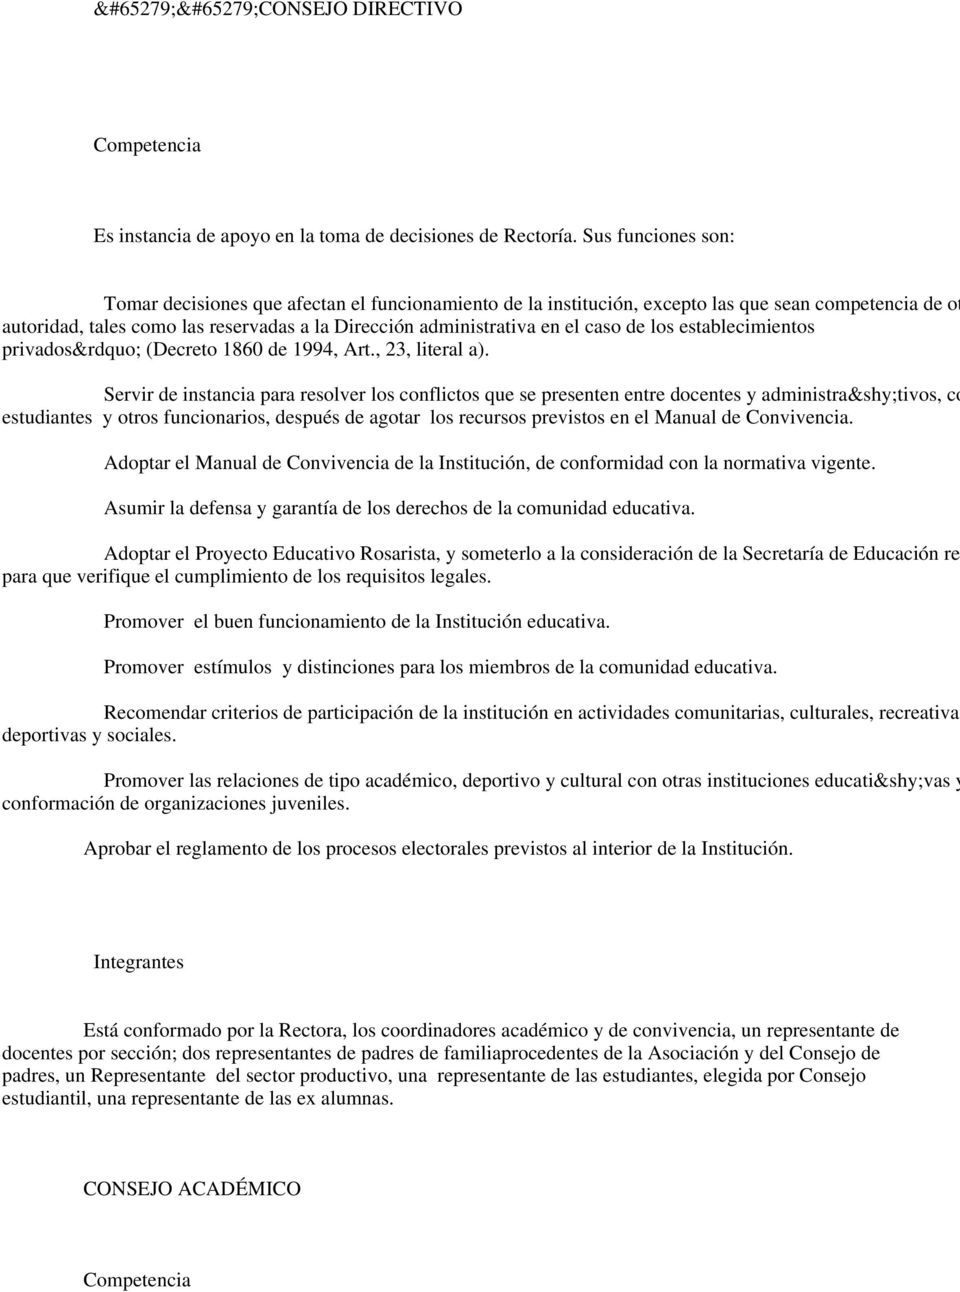 caso de los establecimientos privados (Decreto 1860 de 1994, Art., 23, literal a).